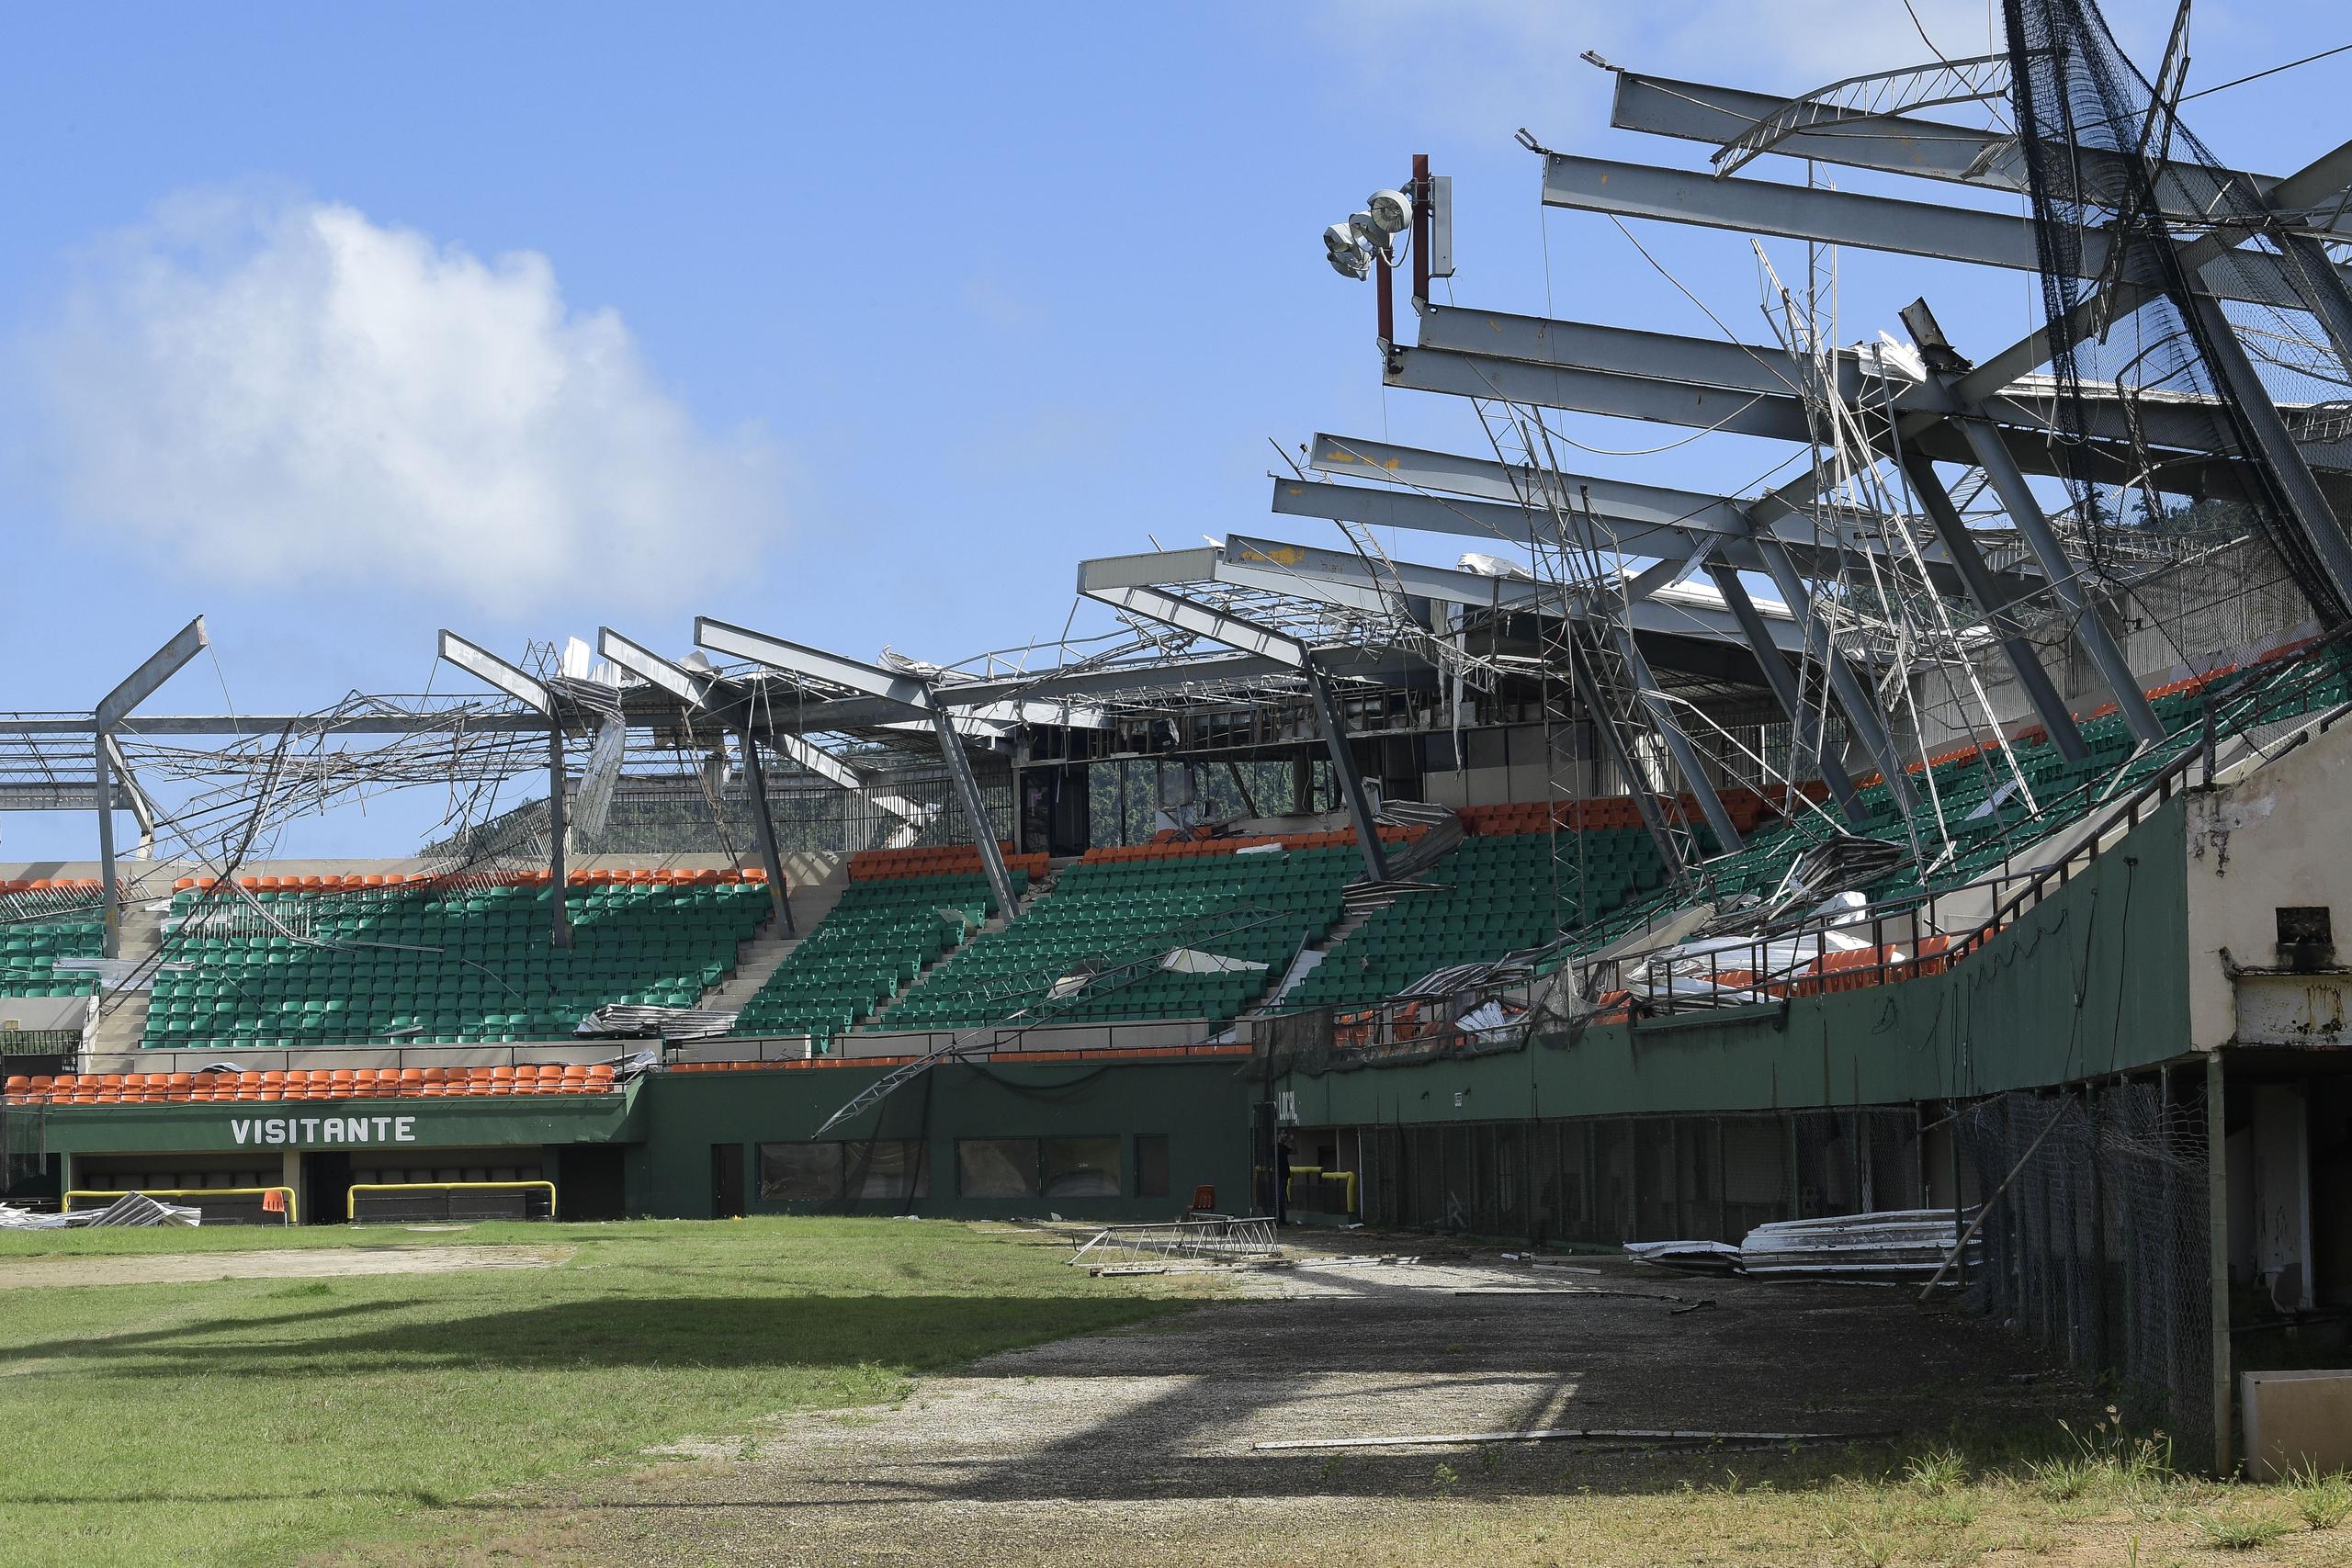 Daños en el estadio Félix Millán tras el huracán María. (gerald.lopez@gfrmedia.com)